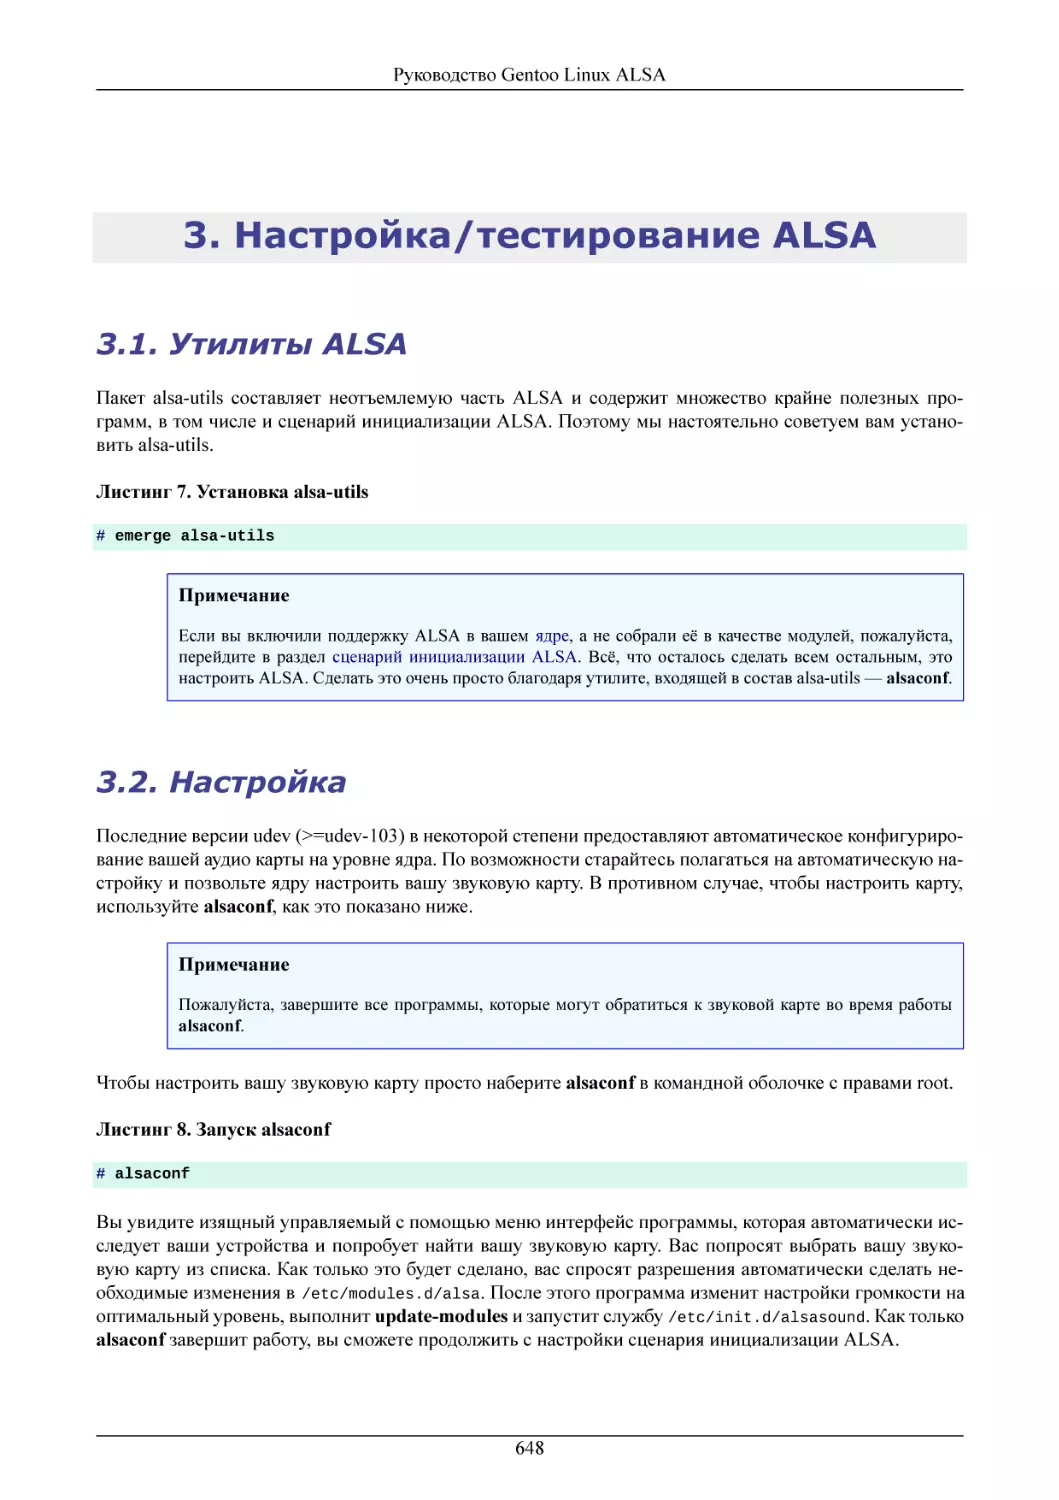 Настройка/тестирование ALSA
Утилиты ALSA
Настройка